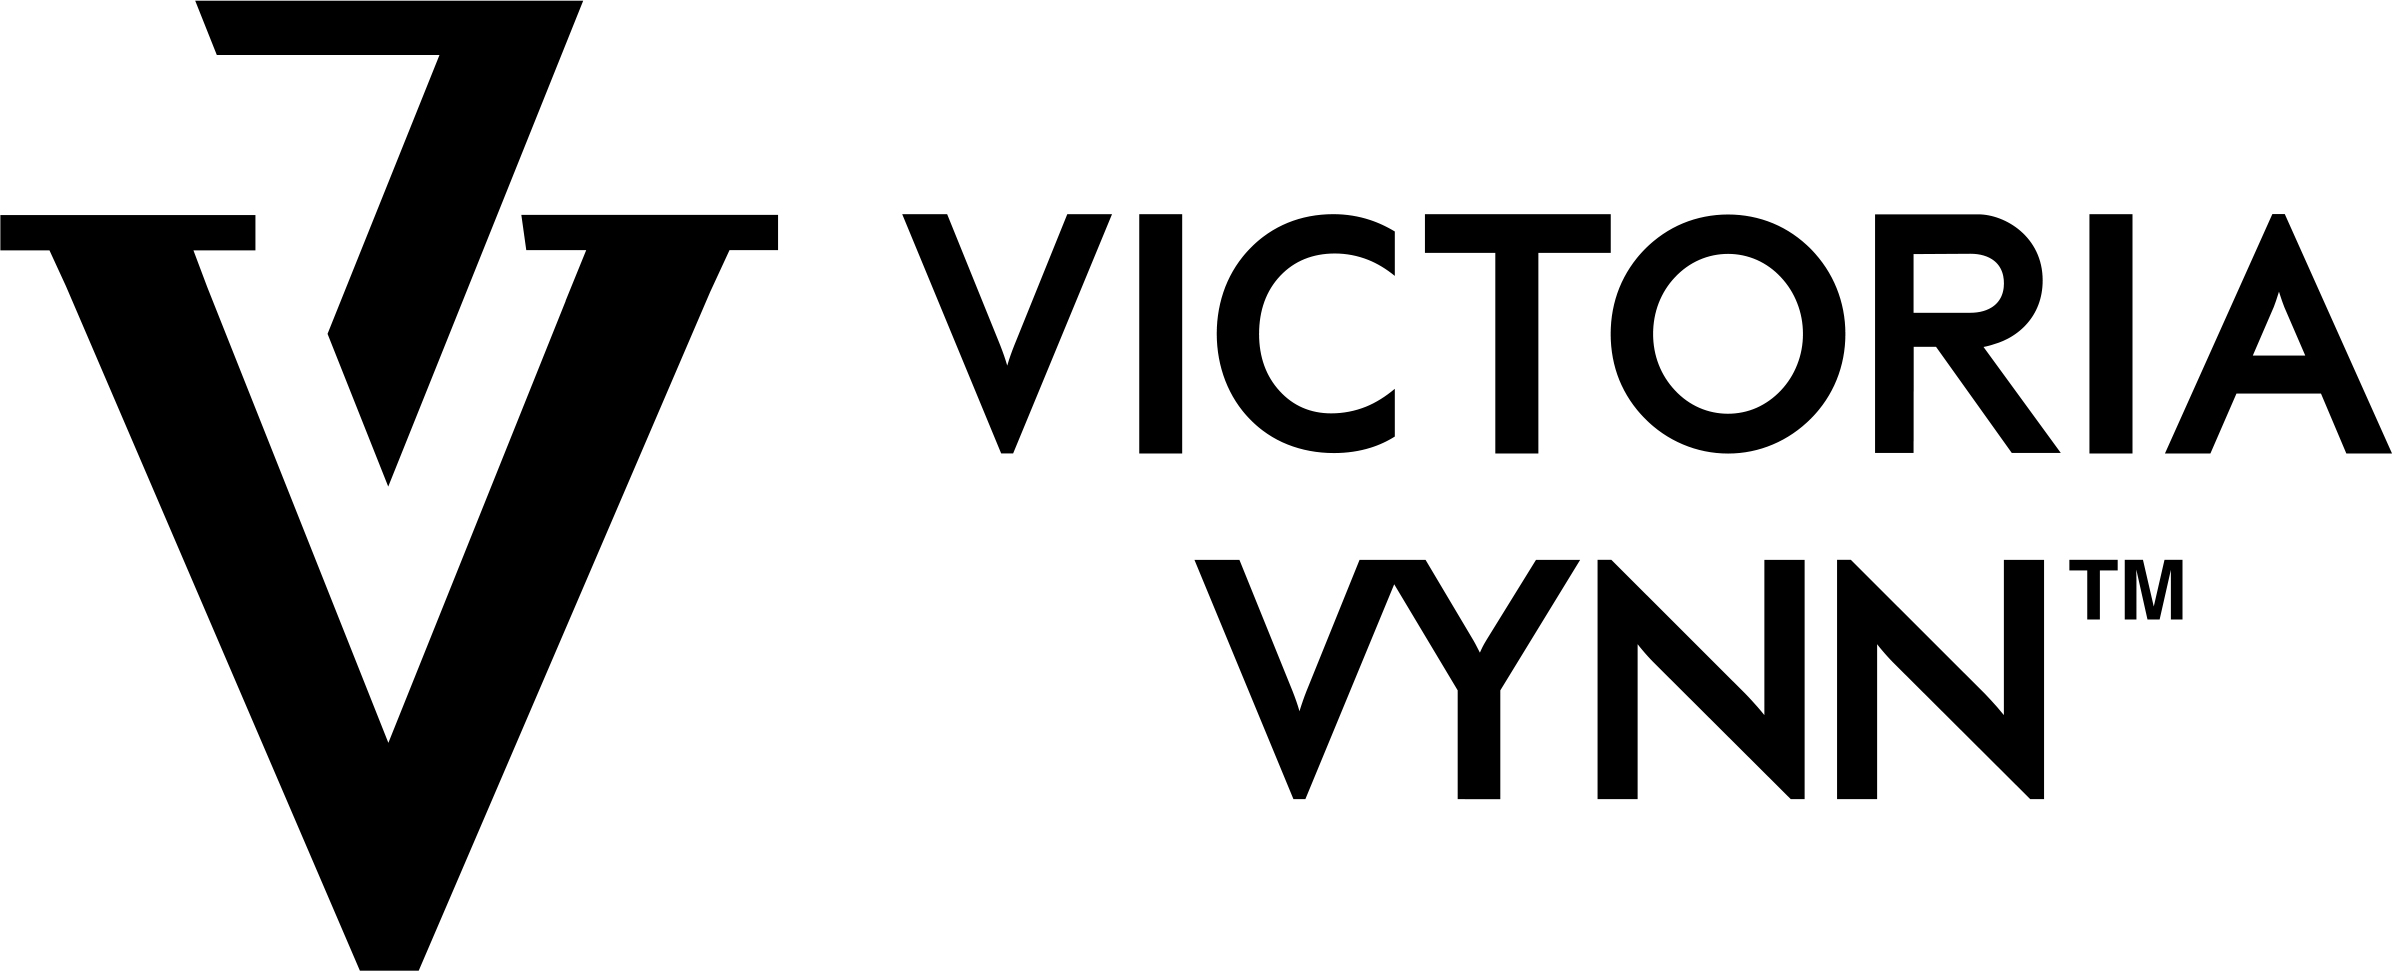 Victoria Vynn Eesti